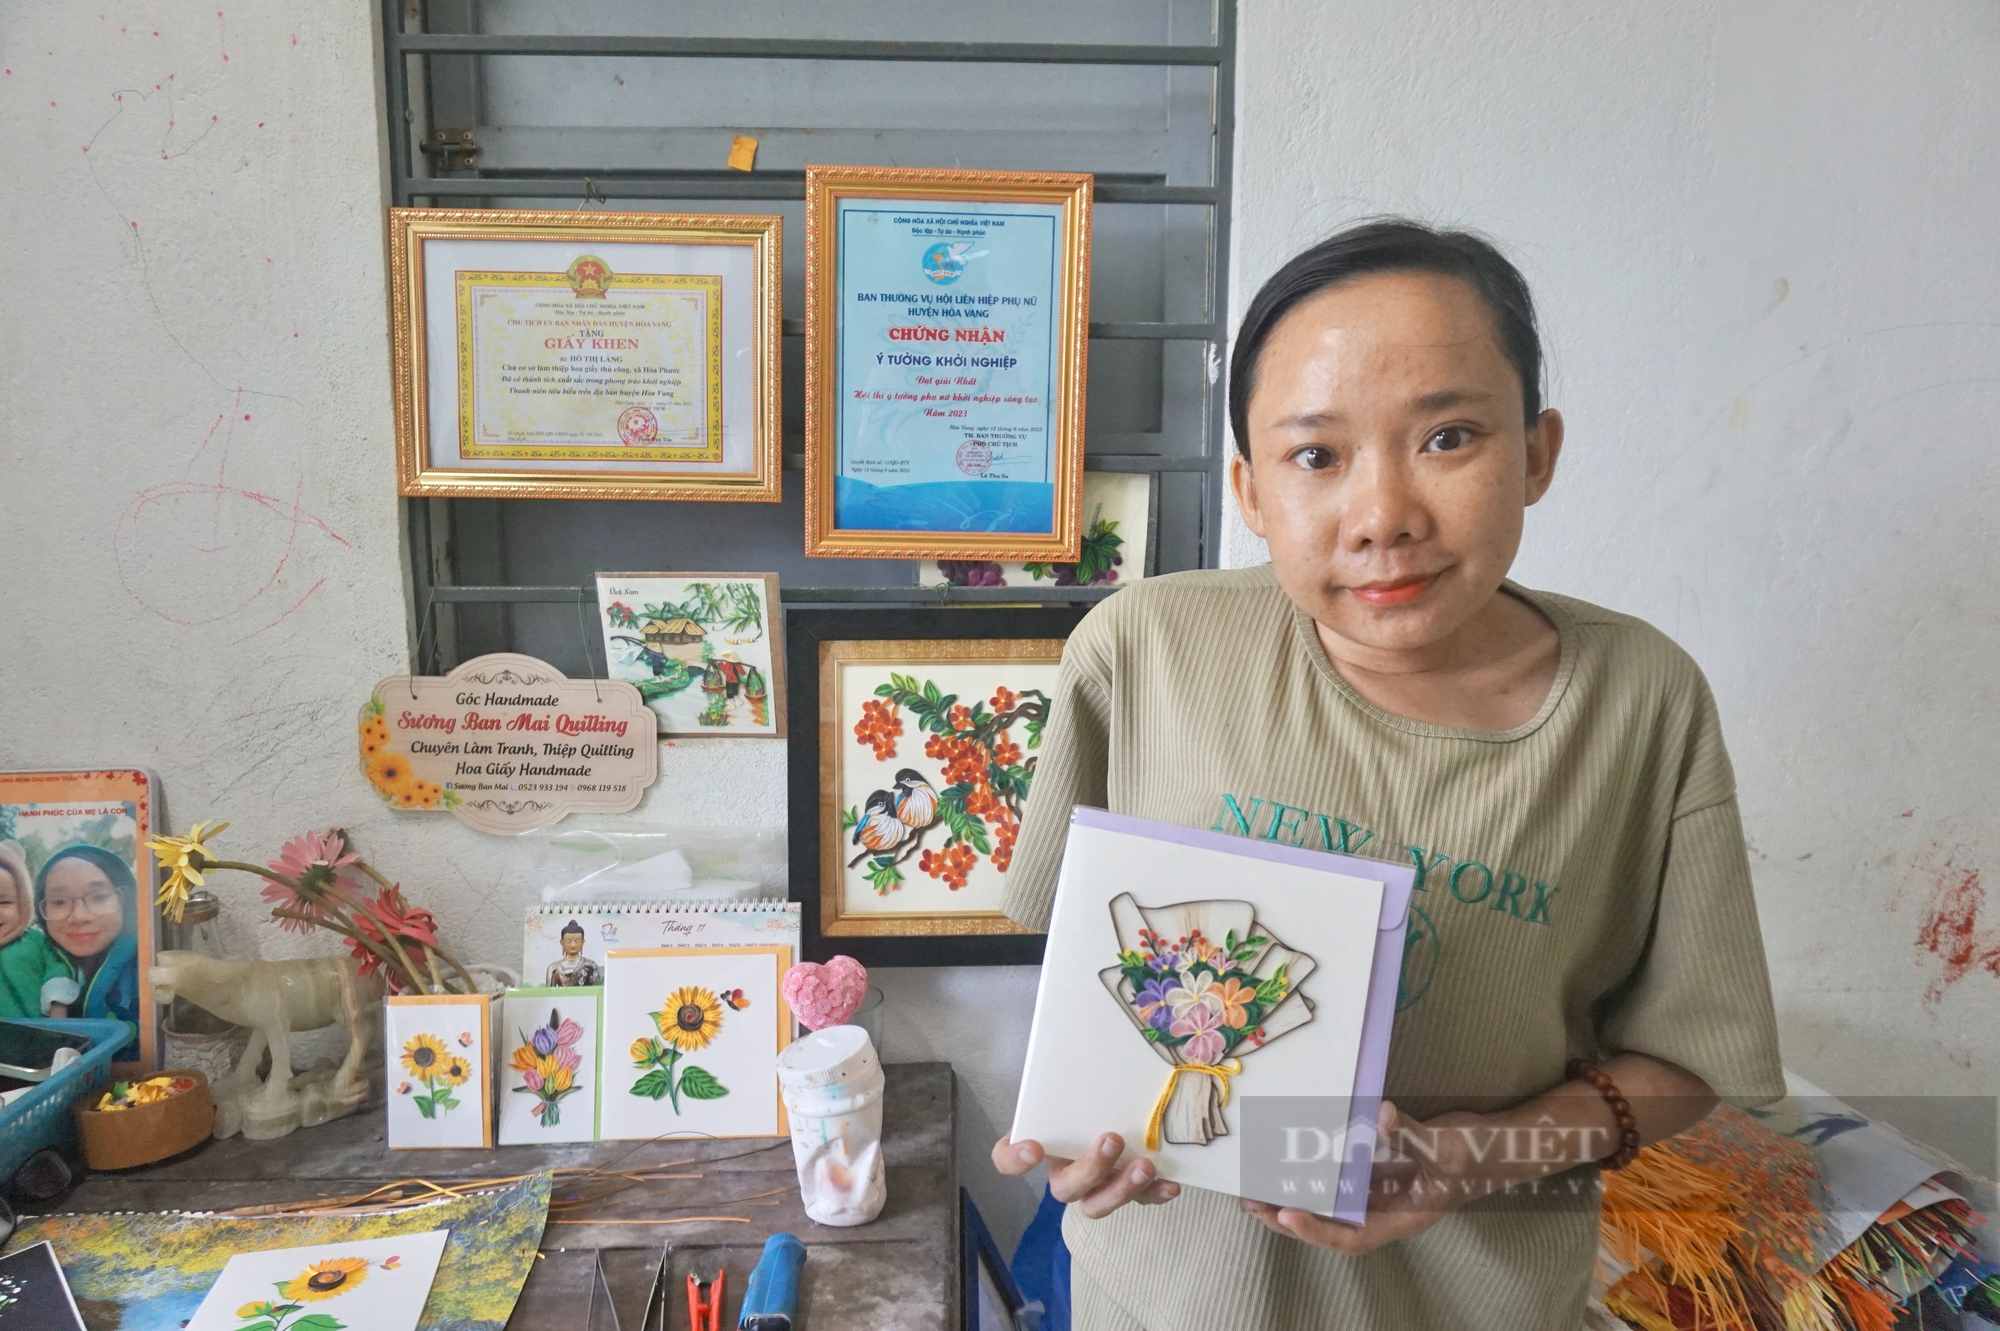 Đà Nẵng: Người mẹ đơn thân khuyết tật khởi nghiệp với đam mê làm tranh giấy xoắn - Ảnh 1.